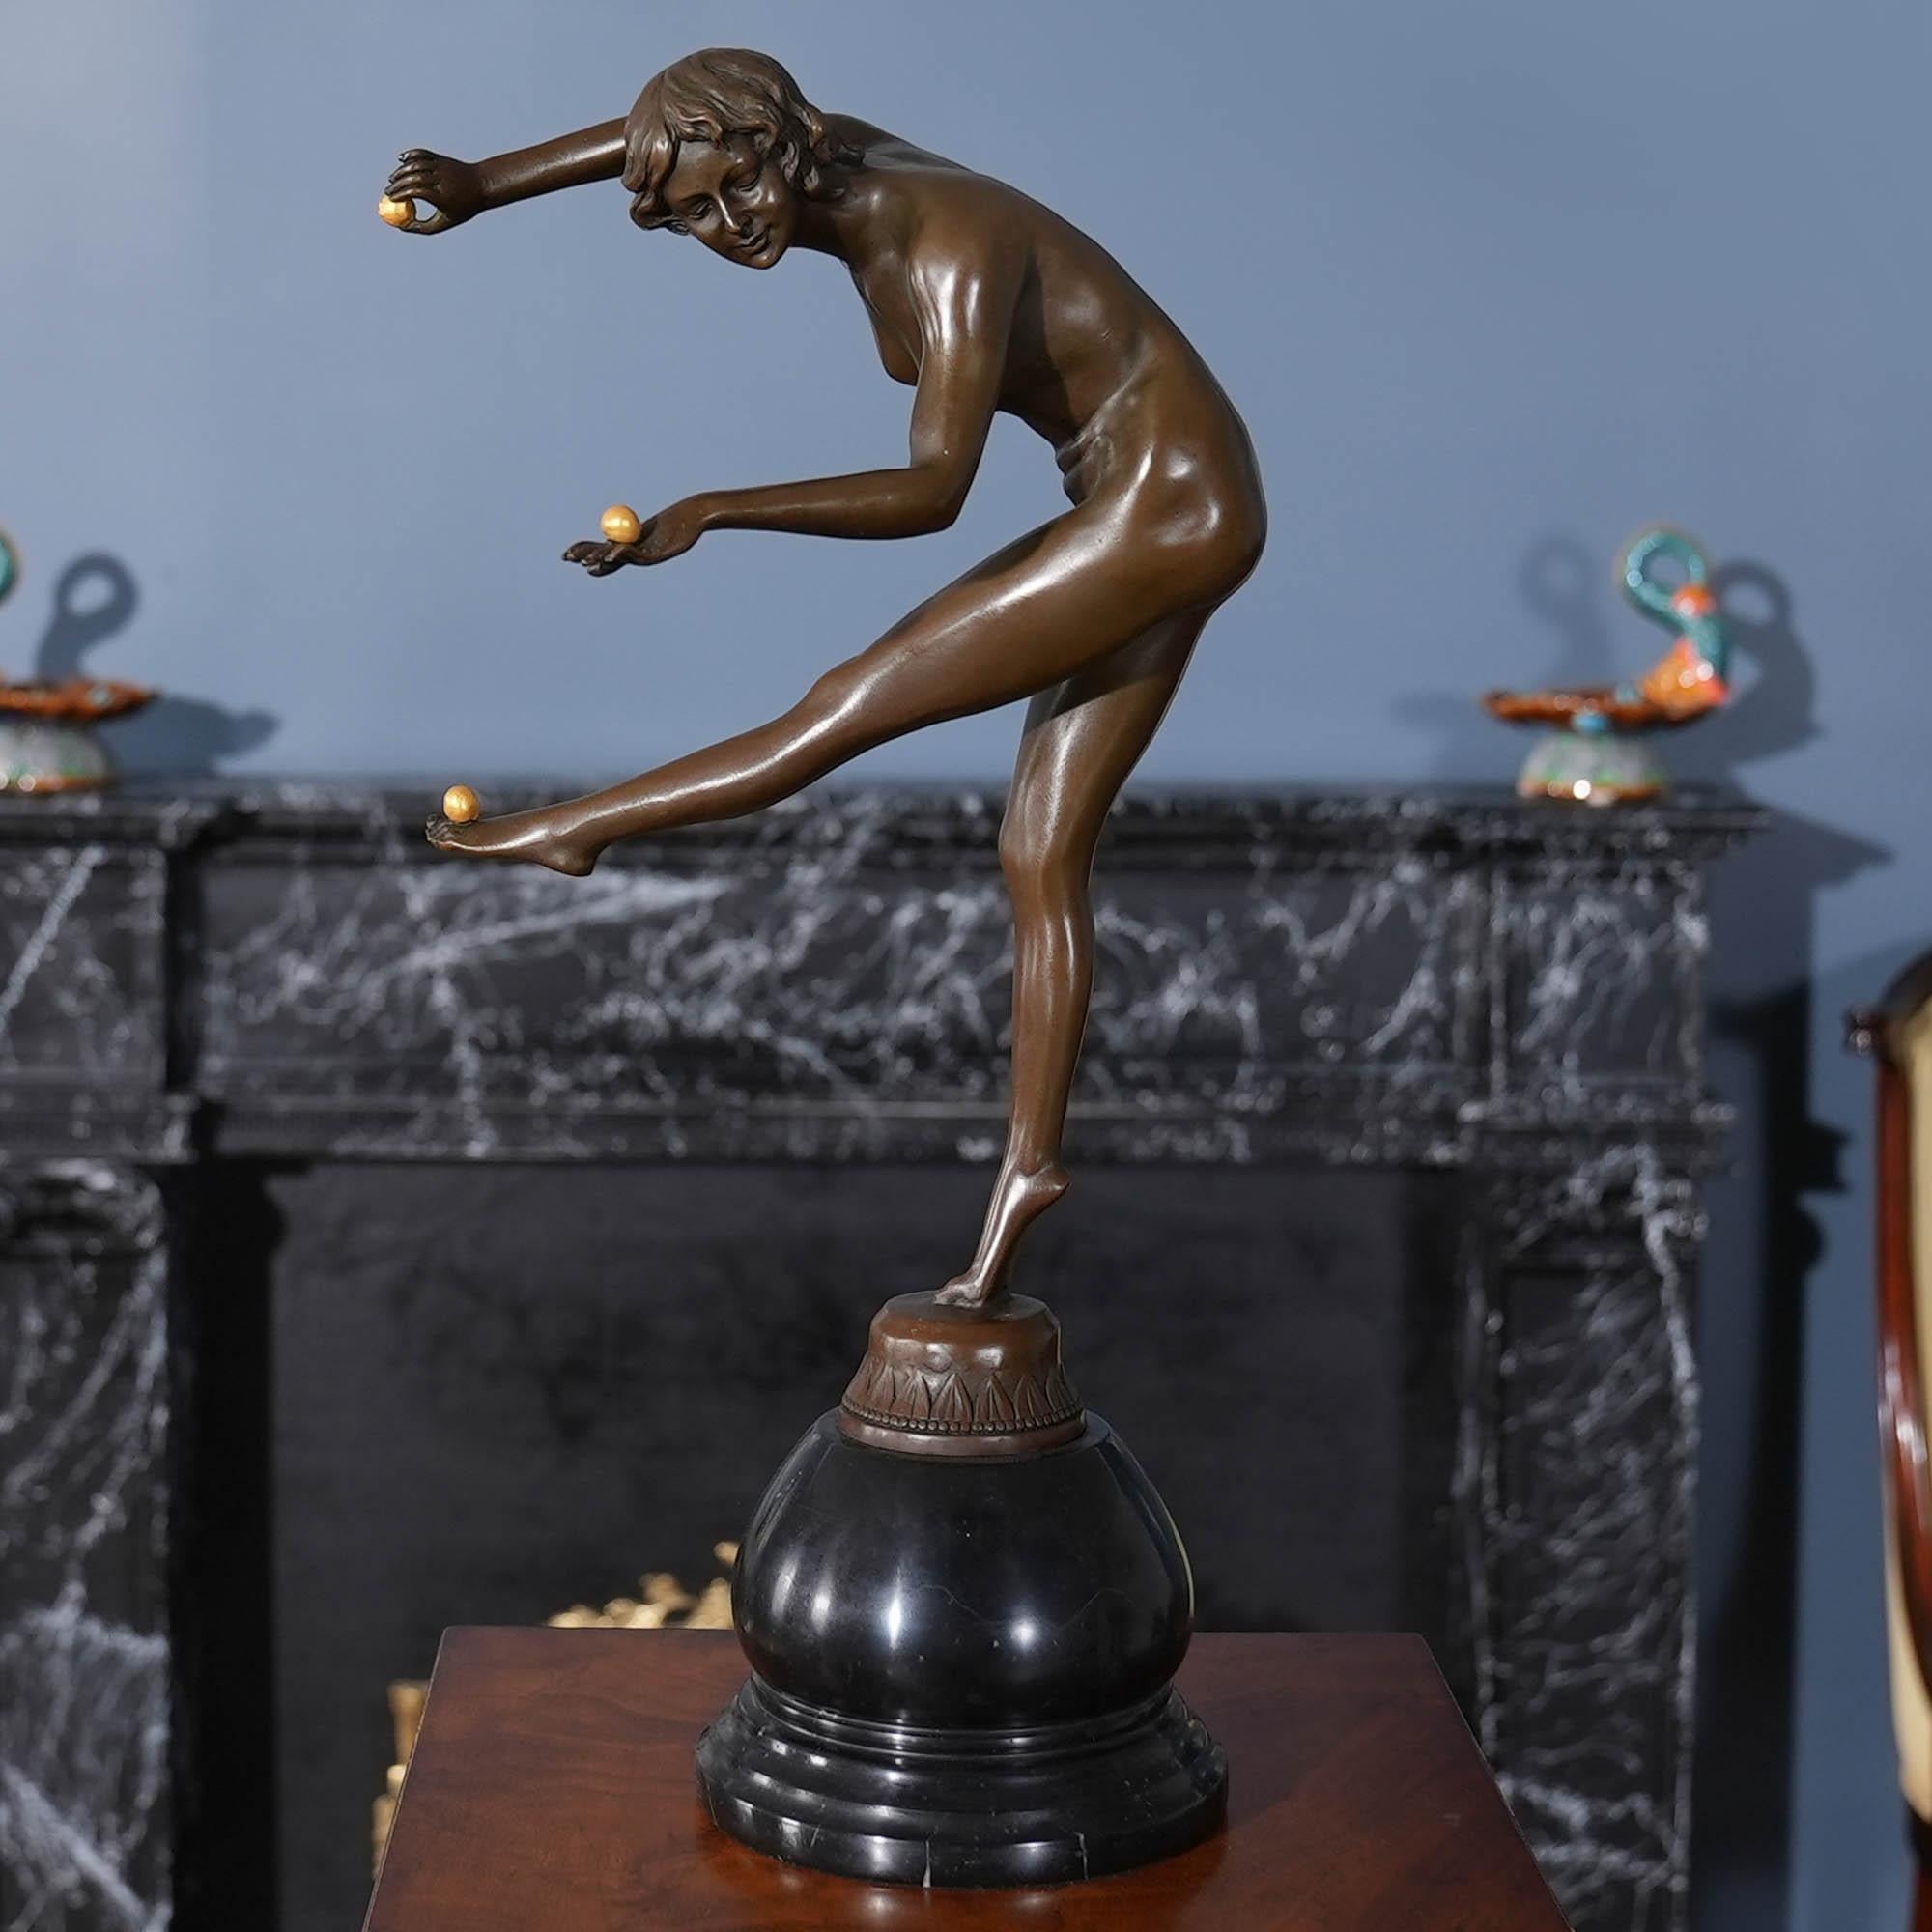 Die weibliche Akrobatin aus Bronze auf einem Marmorsockel ist selbst im Stillstand anmutig und passt in jede Umgebung. Die Statue des Bronze-Akrobaten wurde im traditionellen Wachsausschmelzverfahren gegossen und mit handgearbeiteten Details